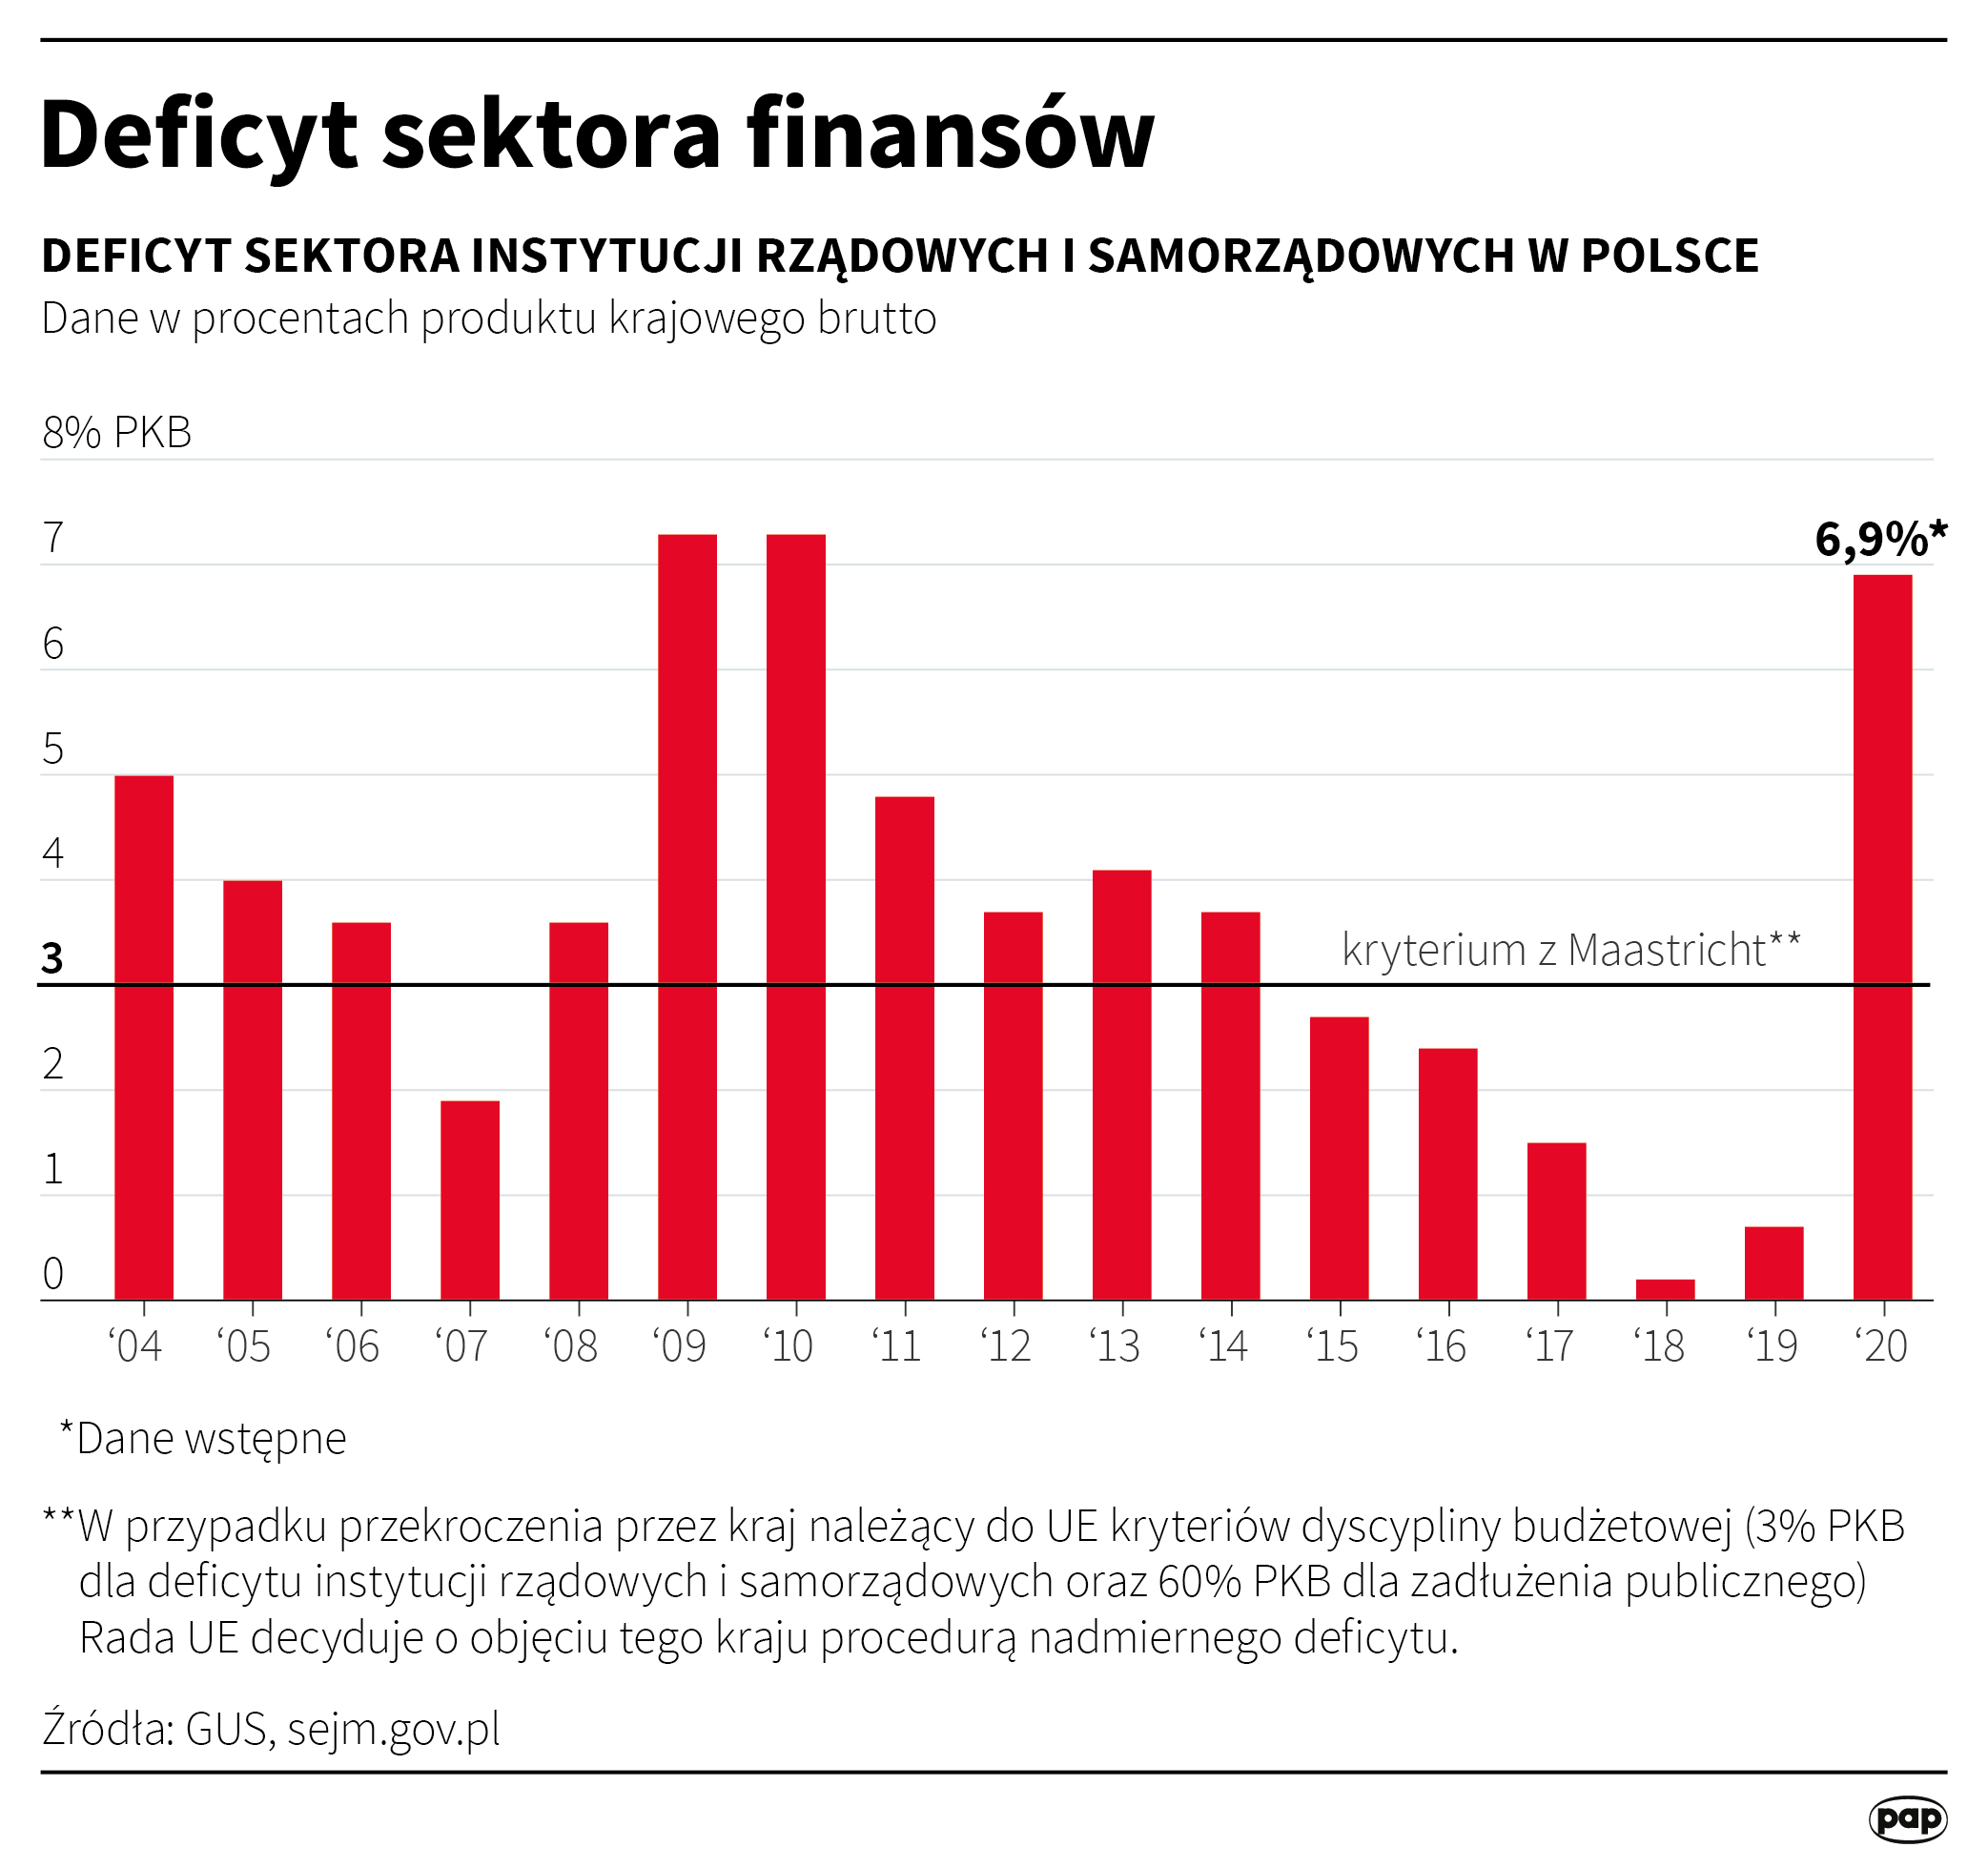 Deficyt sektora finansów publicznych Polski w 2020 r. - wstępne dane GUS